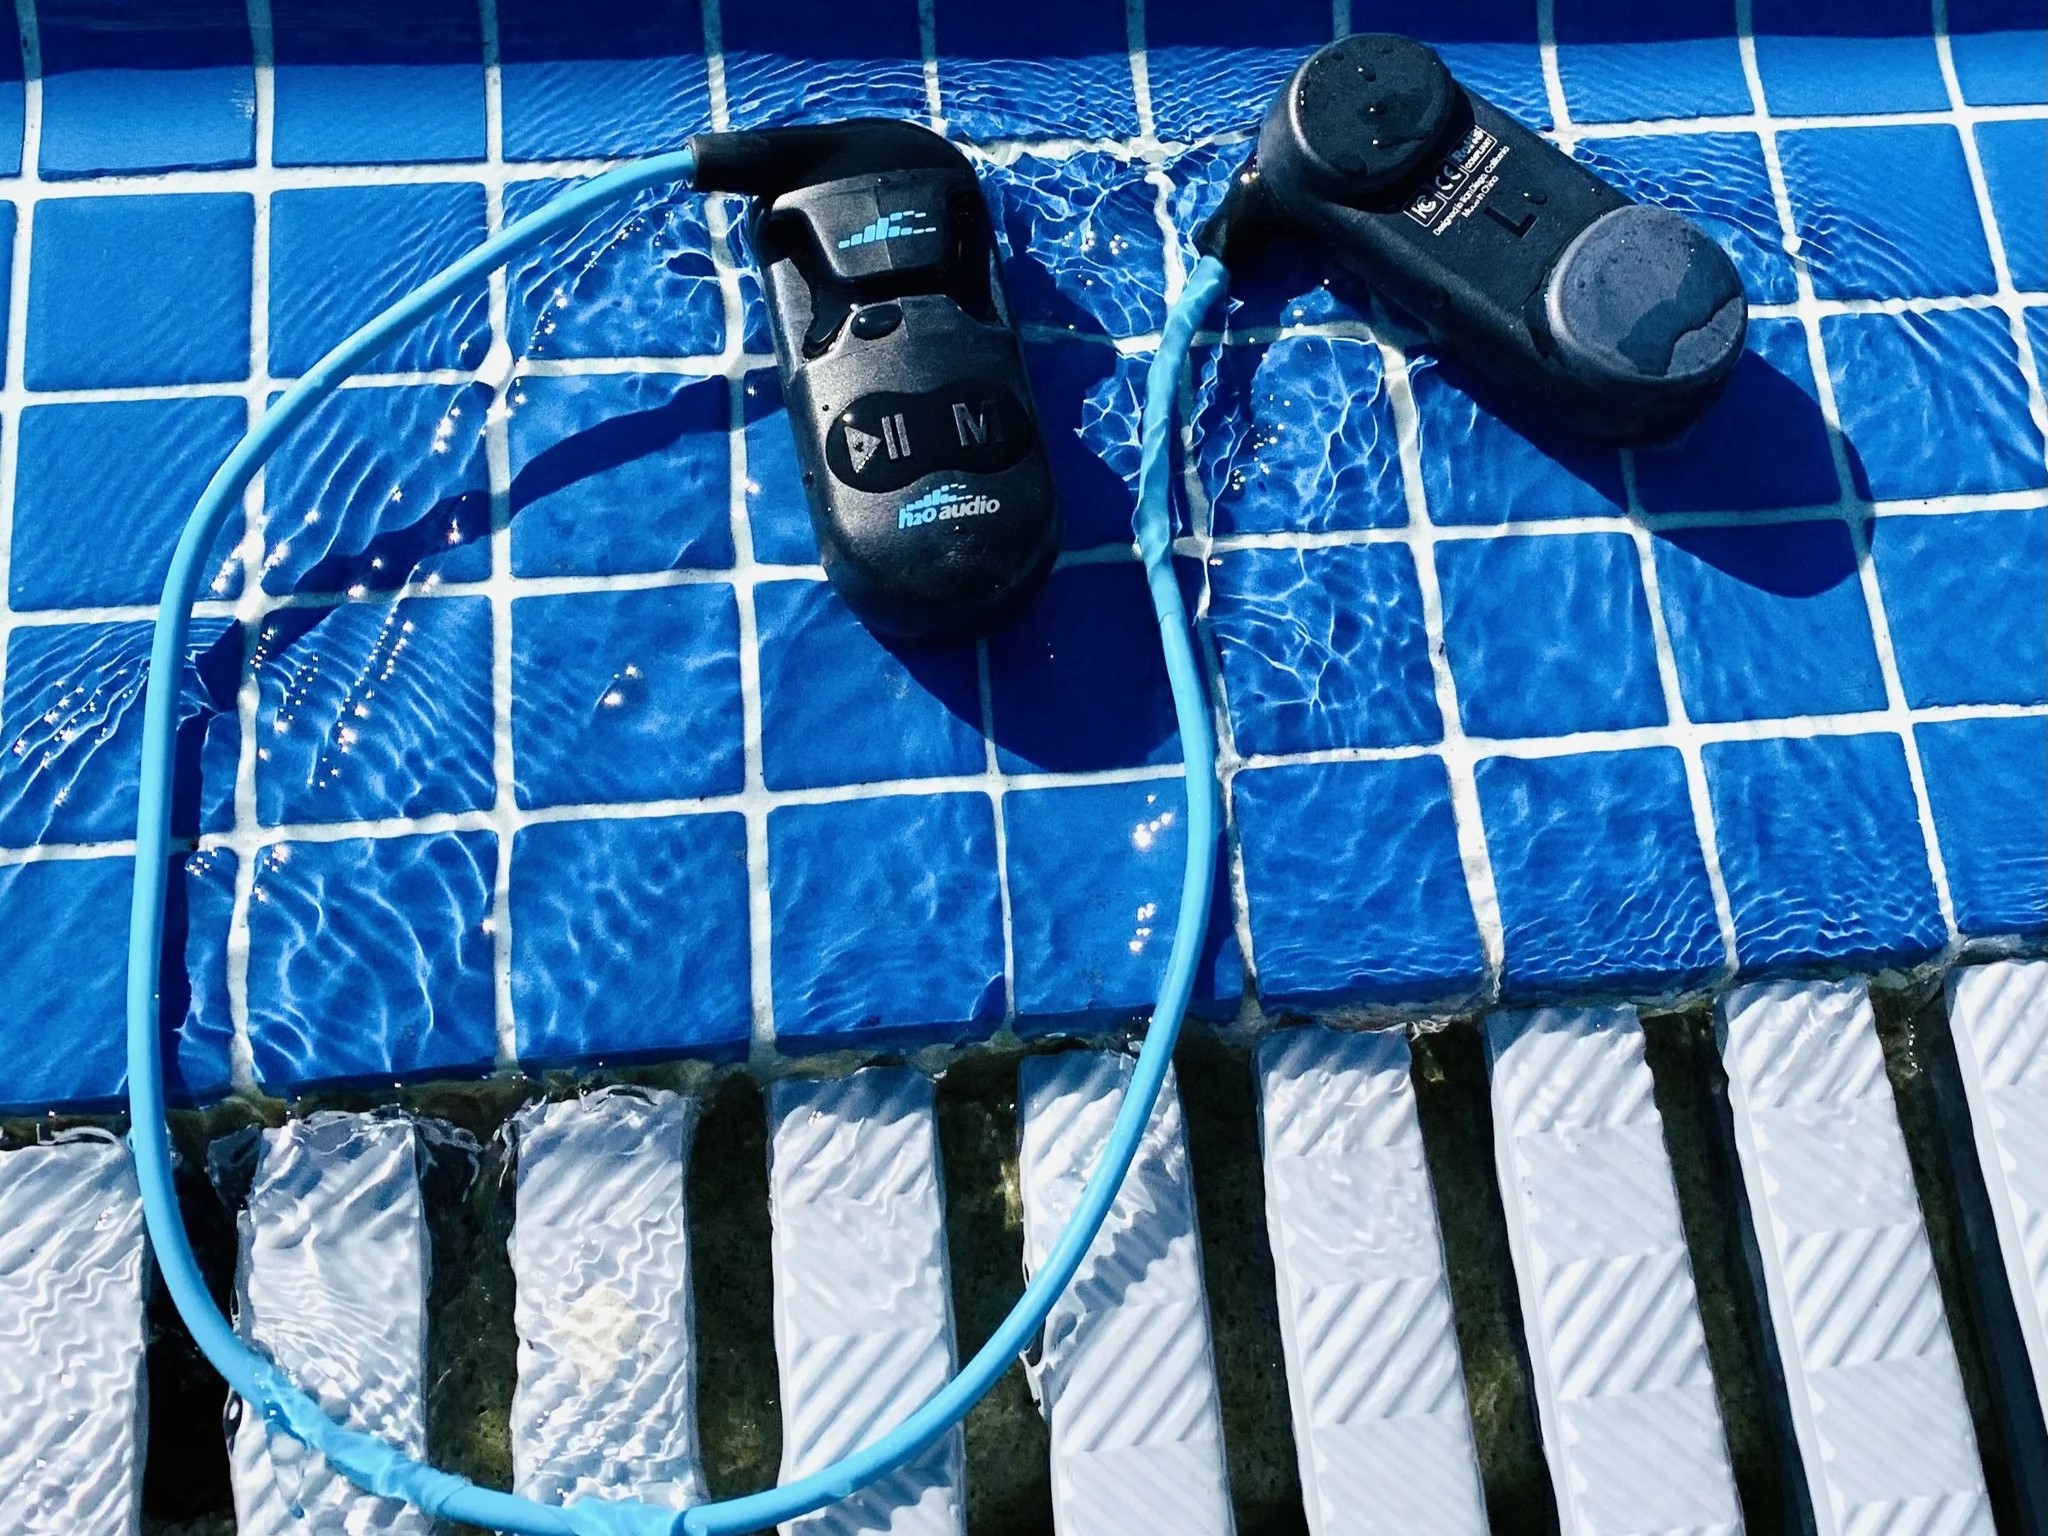 Cómo elegir los mejores auriculares para natación - Casacochecurro